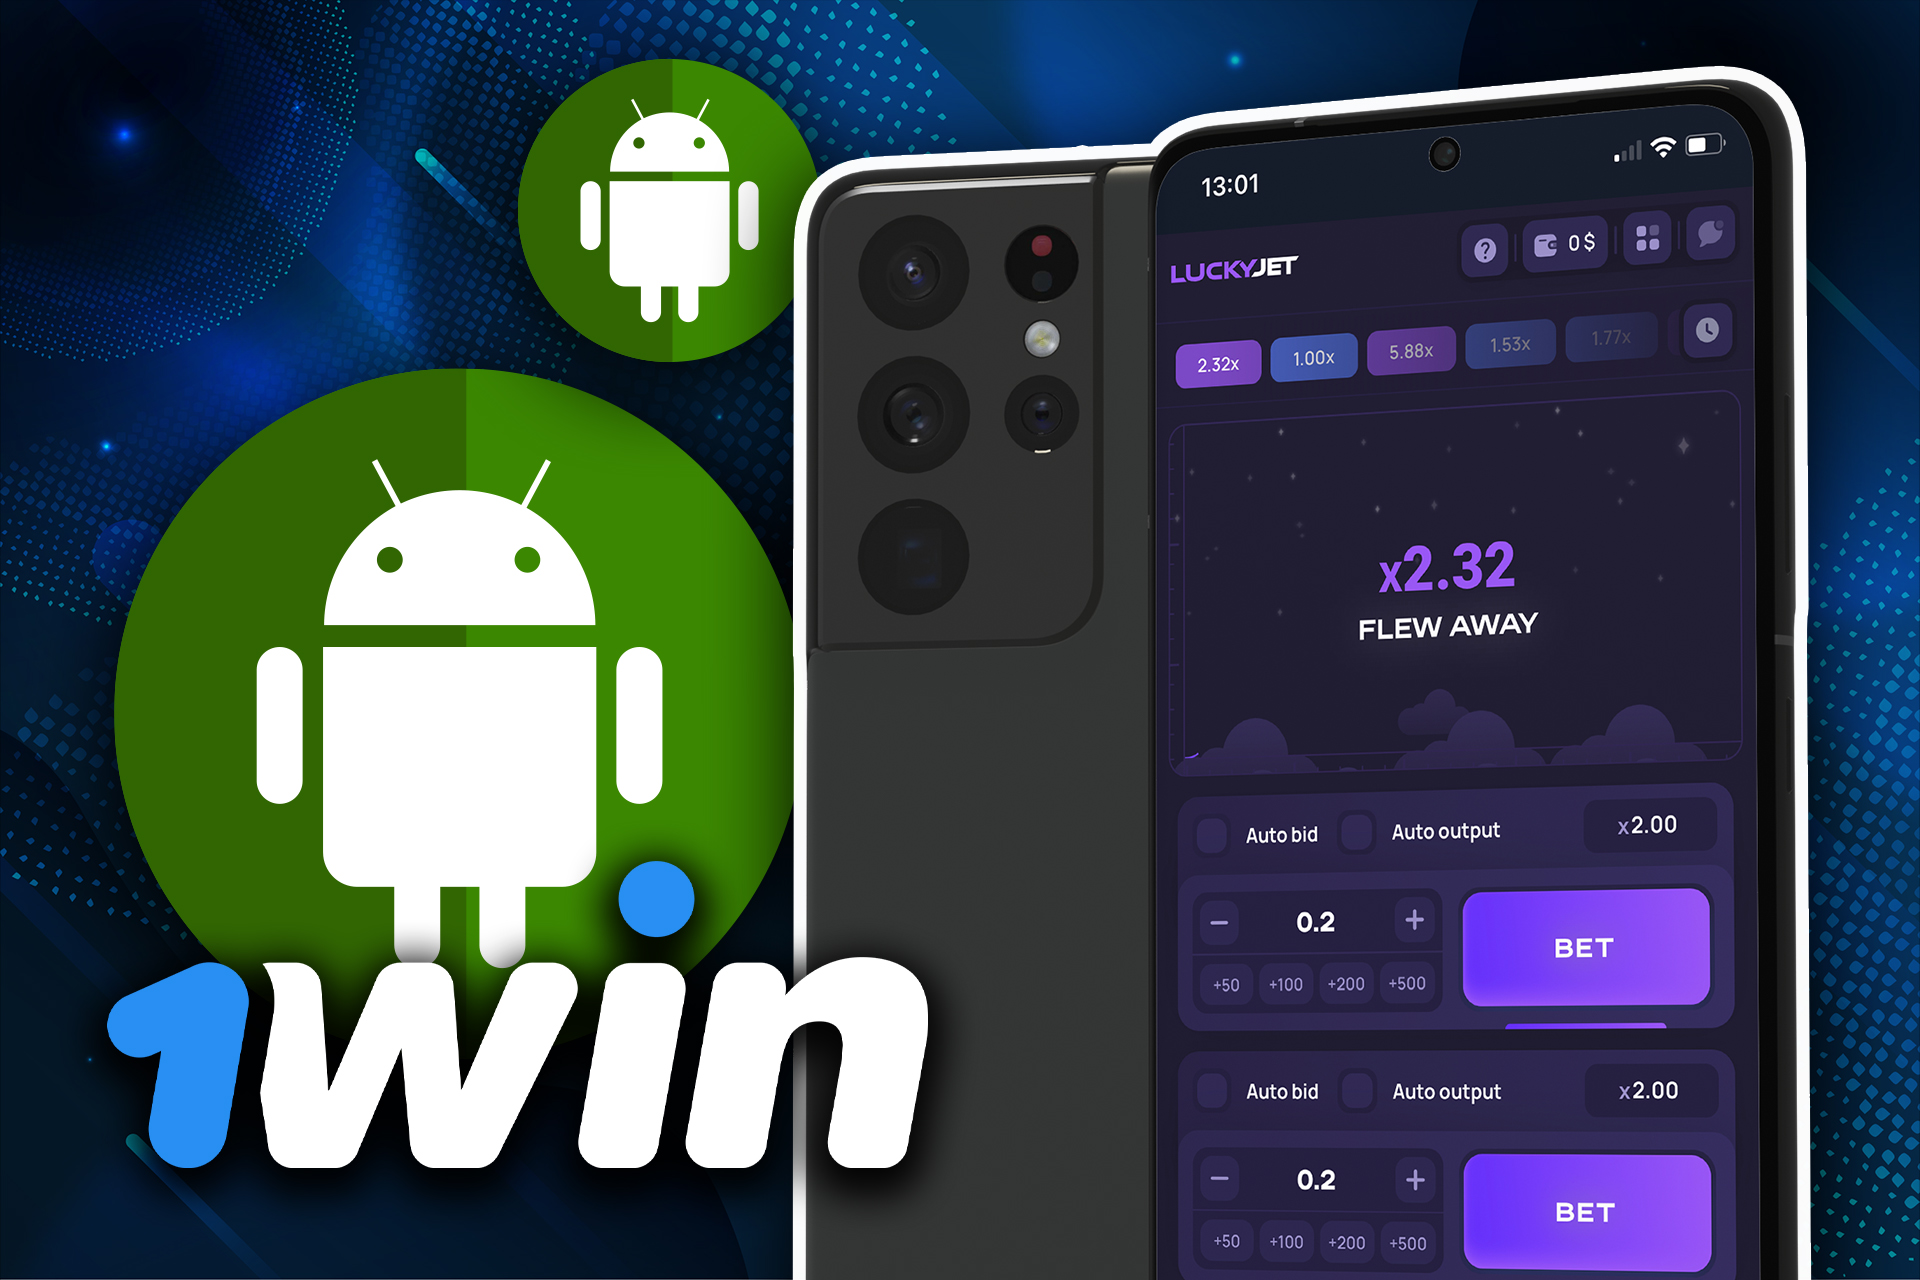 Abre la página web de 1win, descarga la aplicación para Android y juega a Lucky Jet desde tu smartphone.